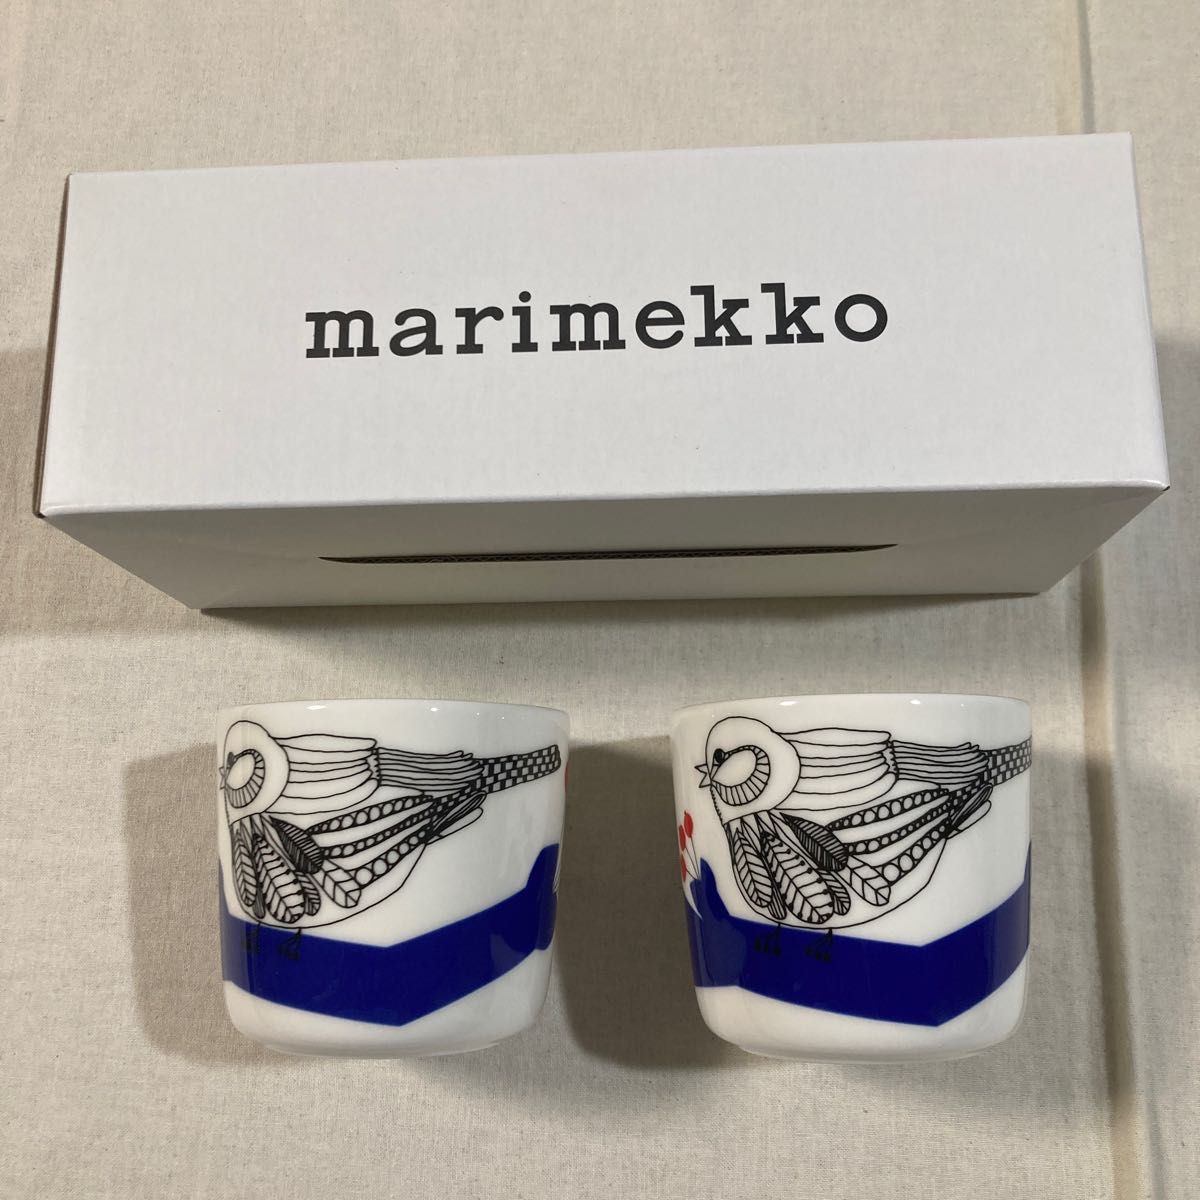 新品 パッカネン pakkanen ラテマグ マリメッコ 鳥 北欧 廃盤 コーヒーカップ 食器 マグカップ